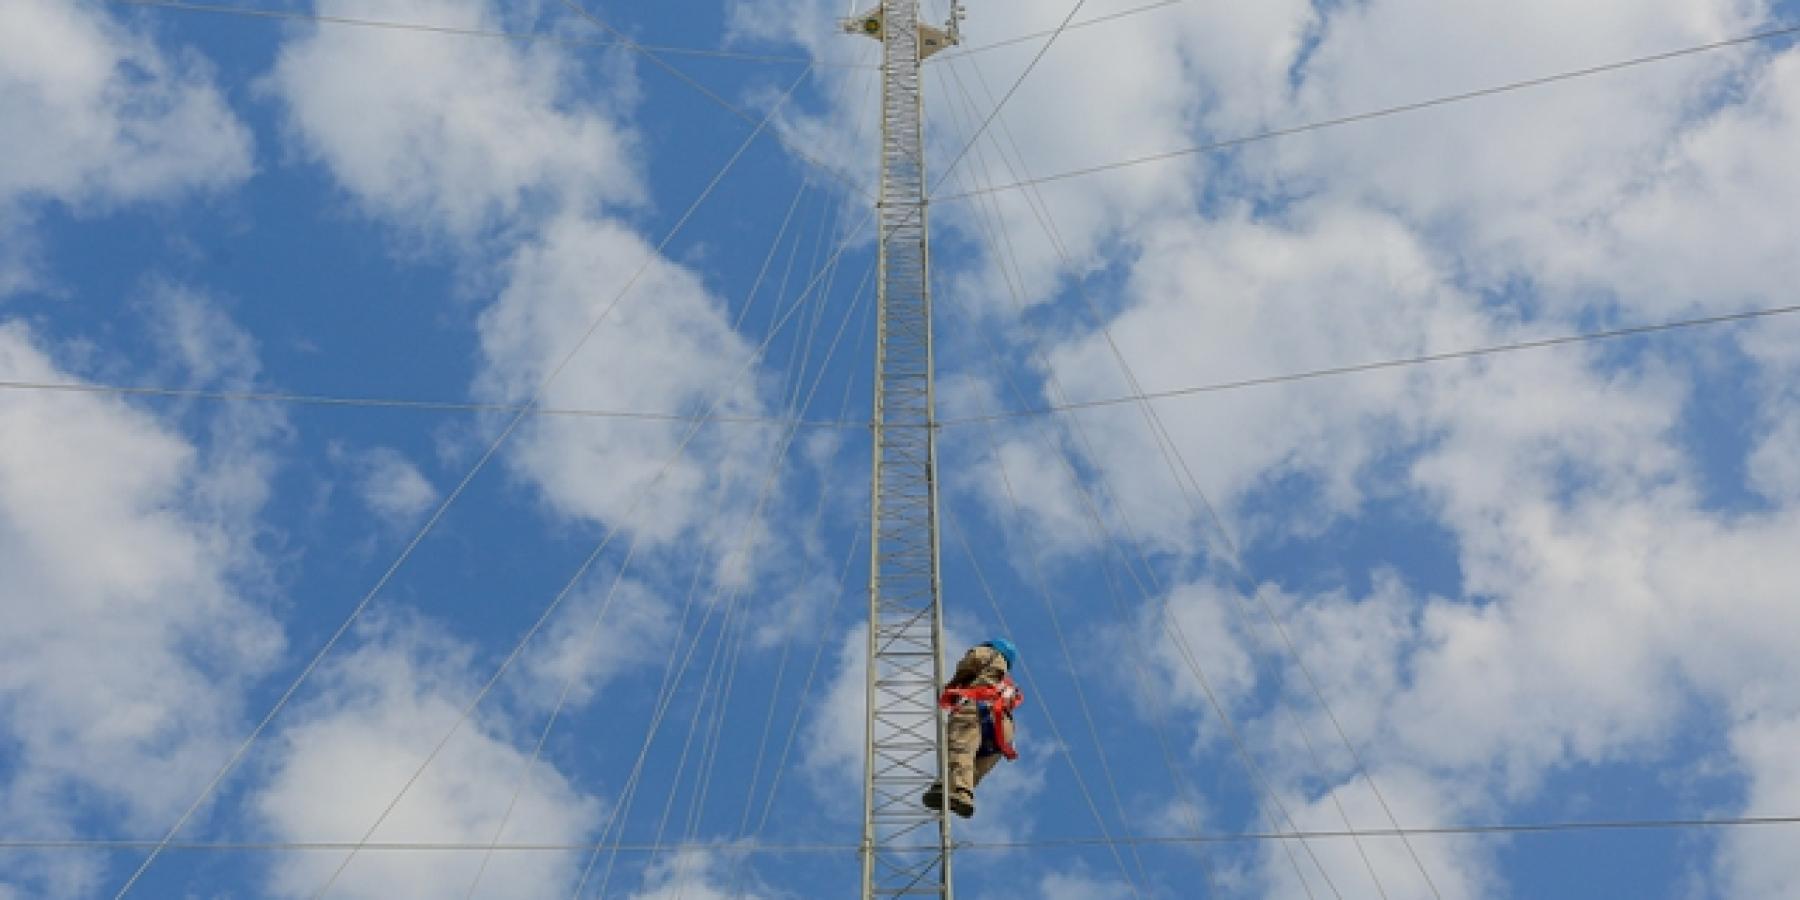 قسم المراقبة والاتصالات في العتبة العلوية ينجز أعمال تنصيب برج للاتصالات اللاسلكية